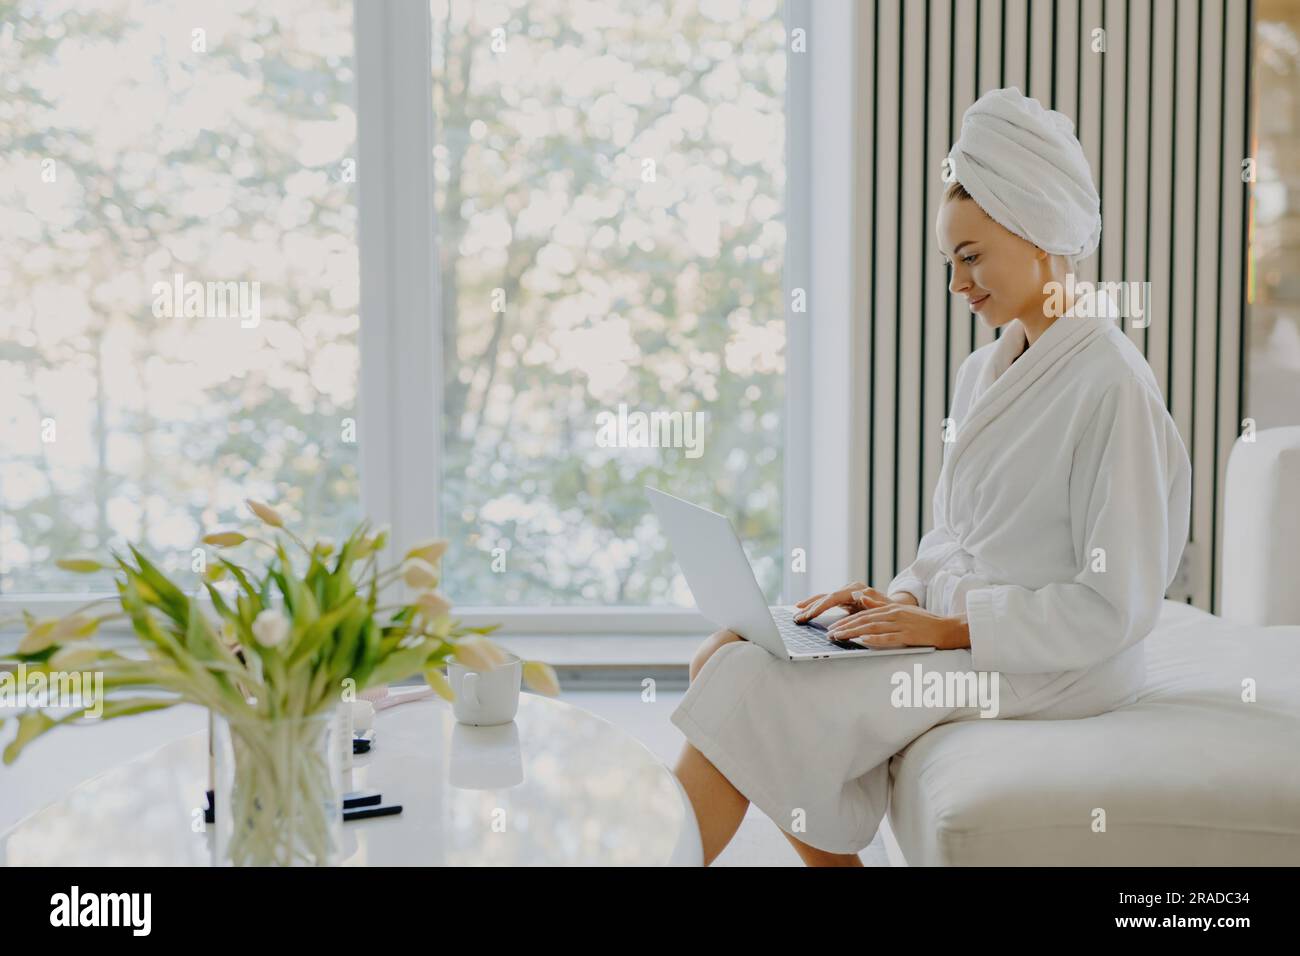 Erfrischte Frau im Bademantel, Handtuch am Kopf, arbeitet am Laptop, sitzt auf dem Sofa, posiert am Fenster in einem gemütlichen Zimmer. Stockfoto